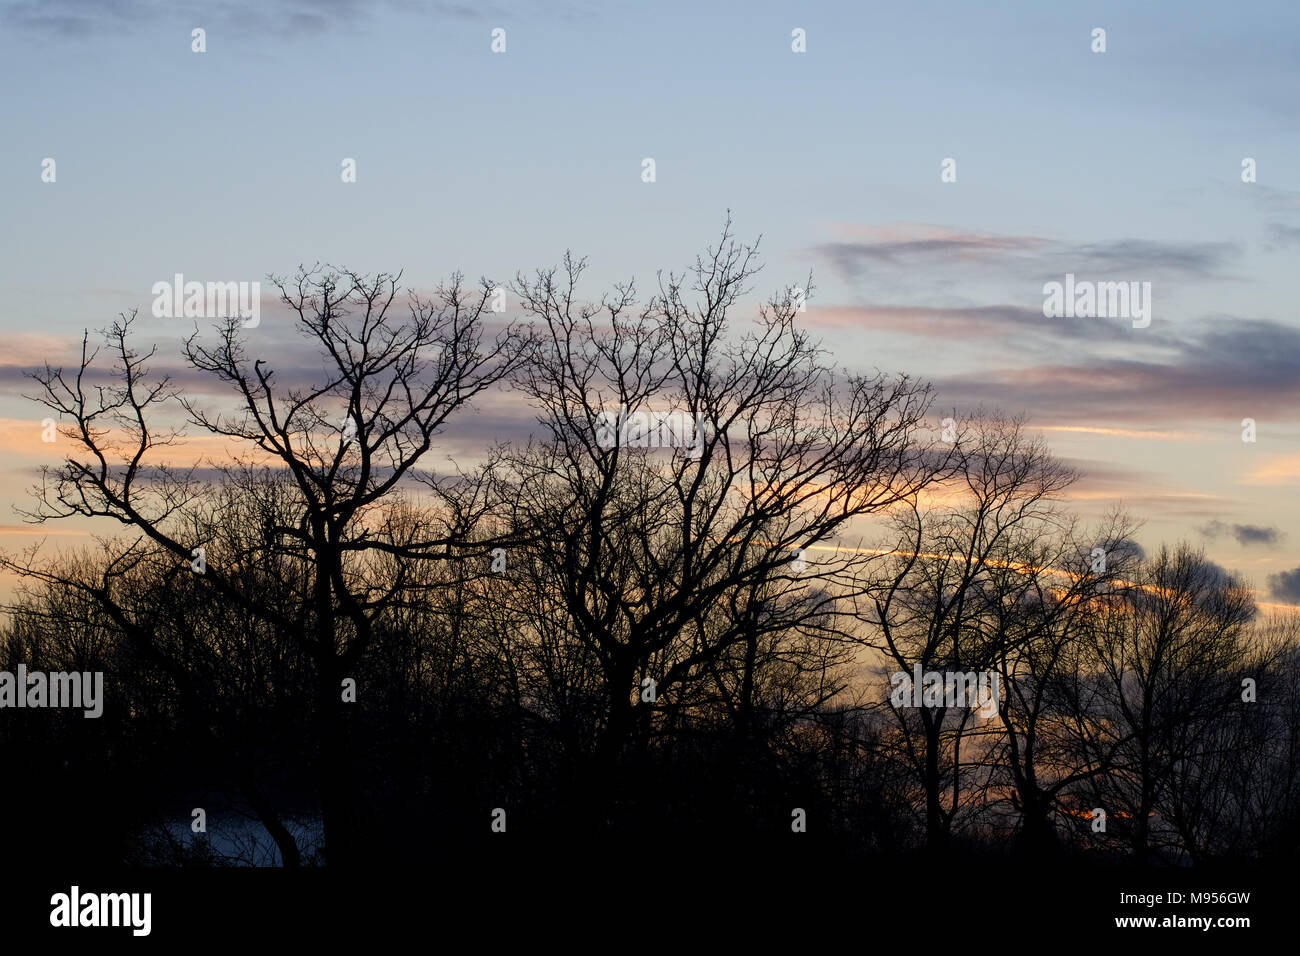 Una vista di alberi in silhouette al tramonto sul Lago di prati, Billericay, Essex, UK Credit: Ben rettore/Alamy Stock Photo Foto Stock